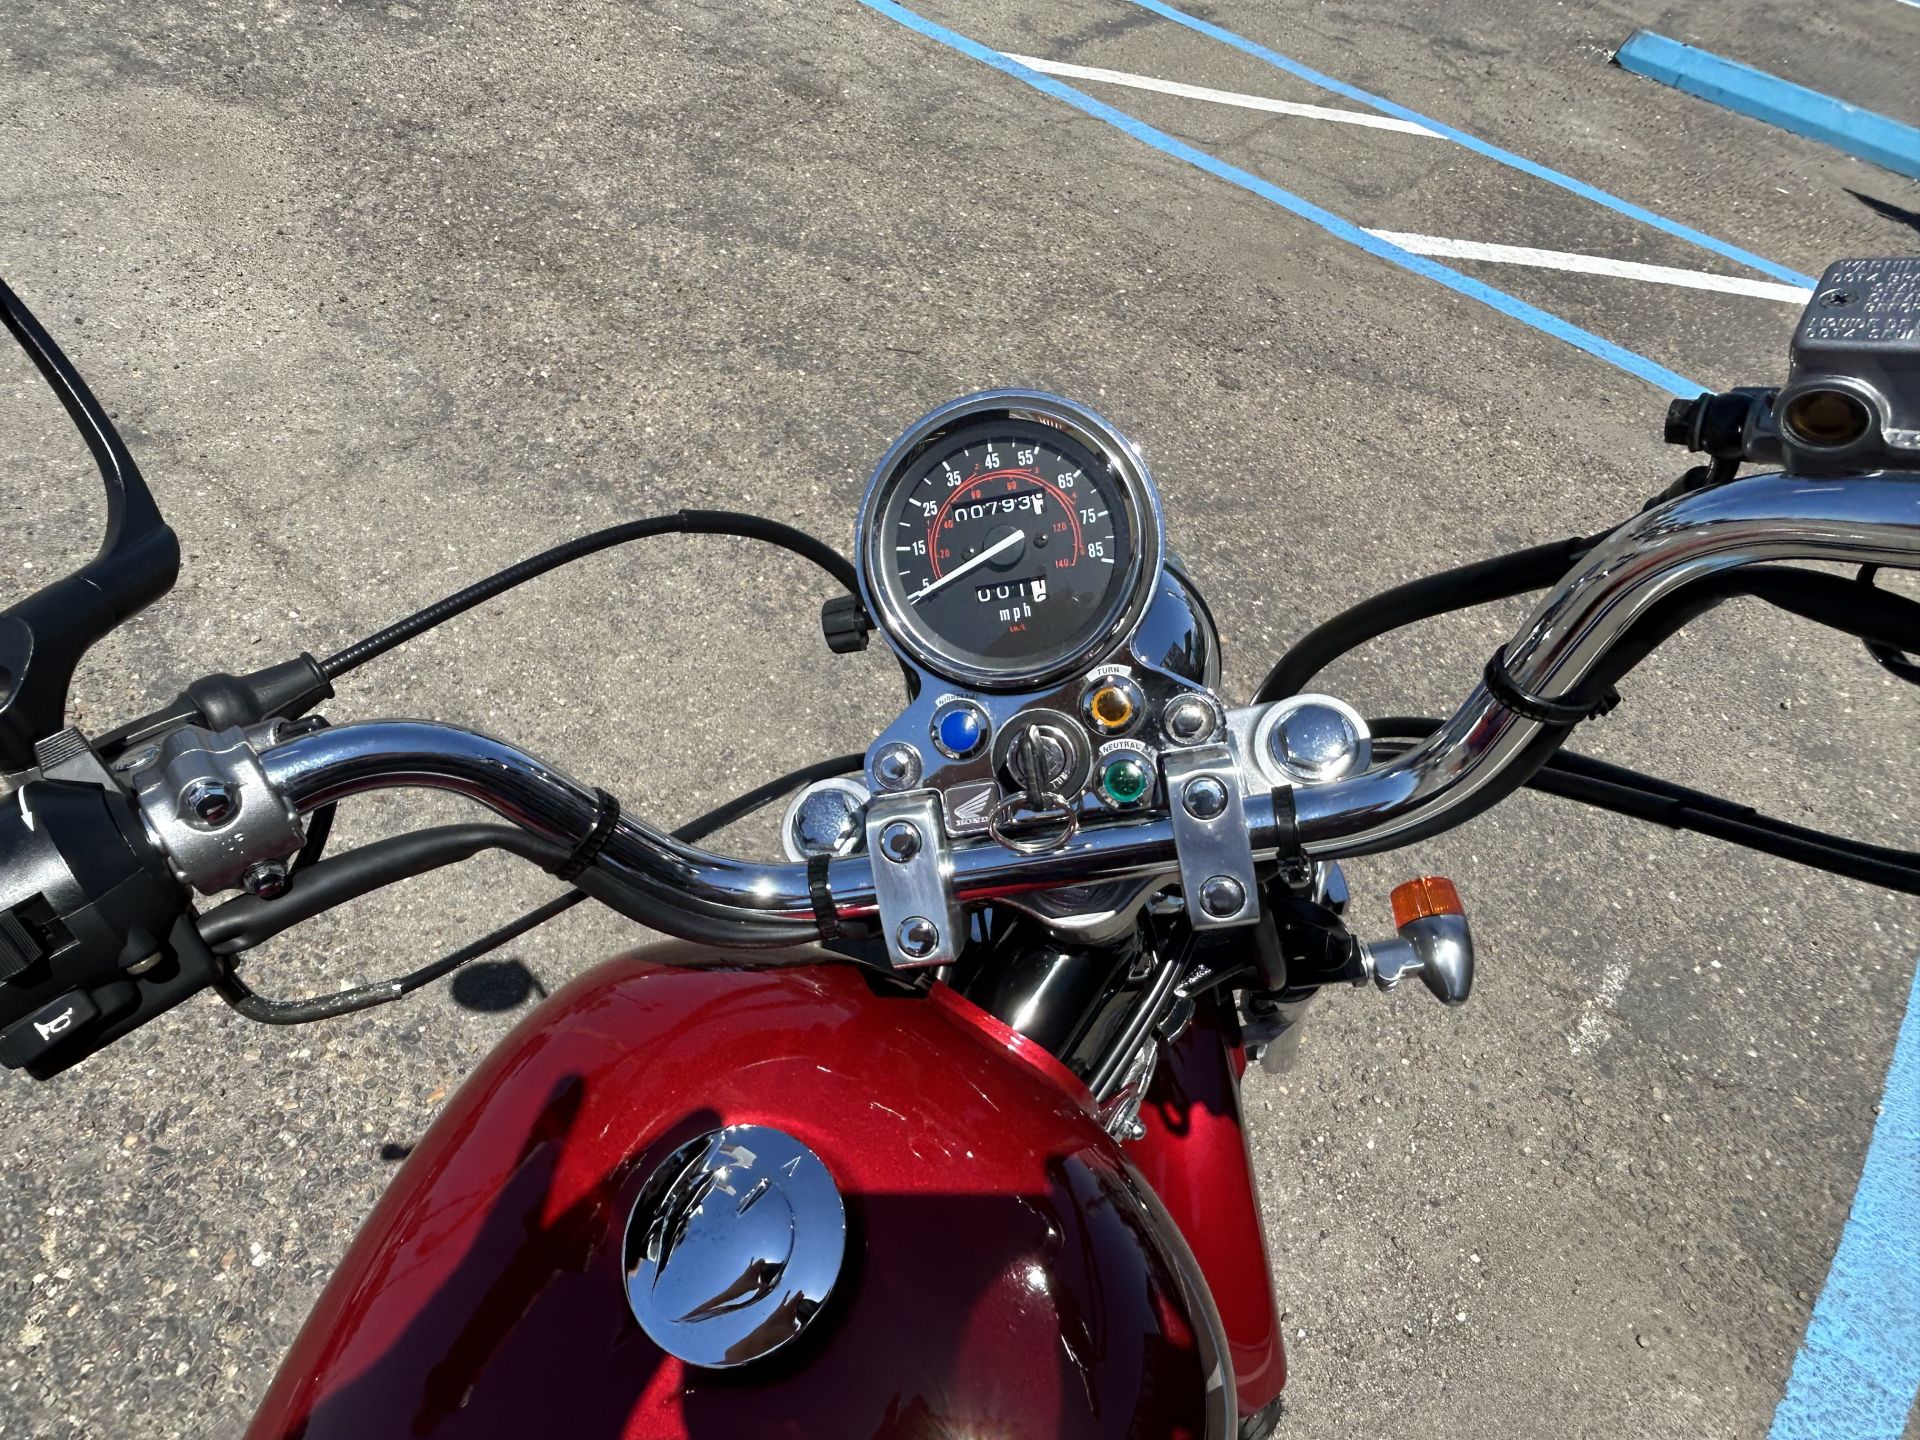 Motorcycle for sale: 2004 Honda Rebel CMX 250 in Lodi Stockton CA ...